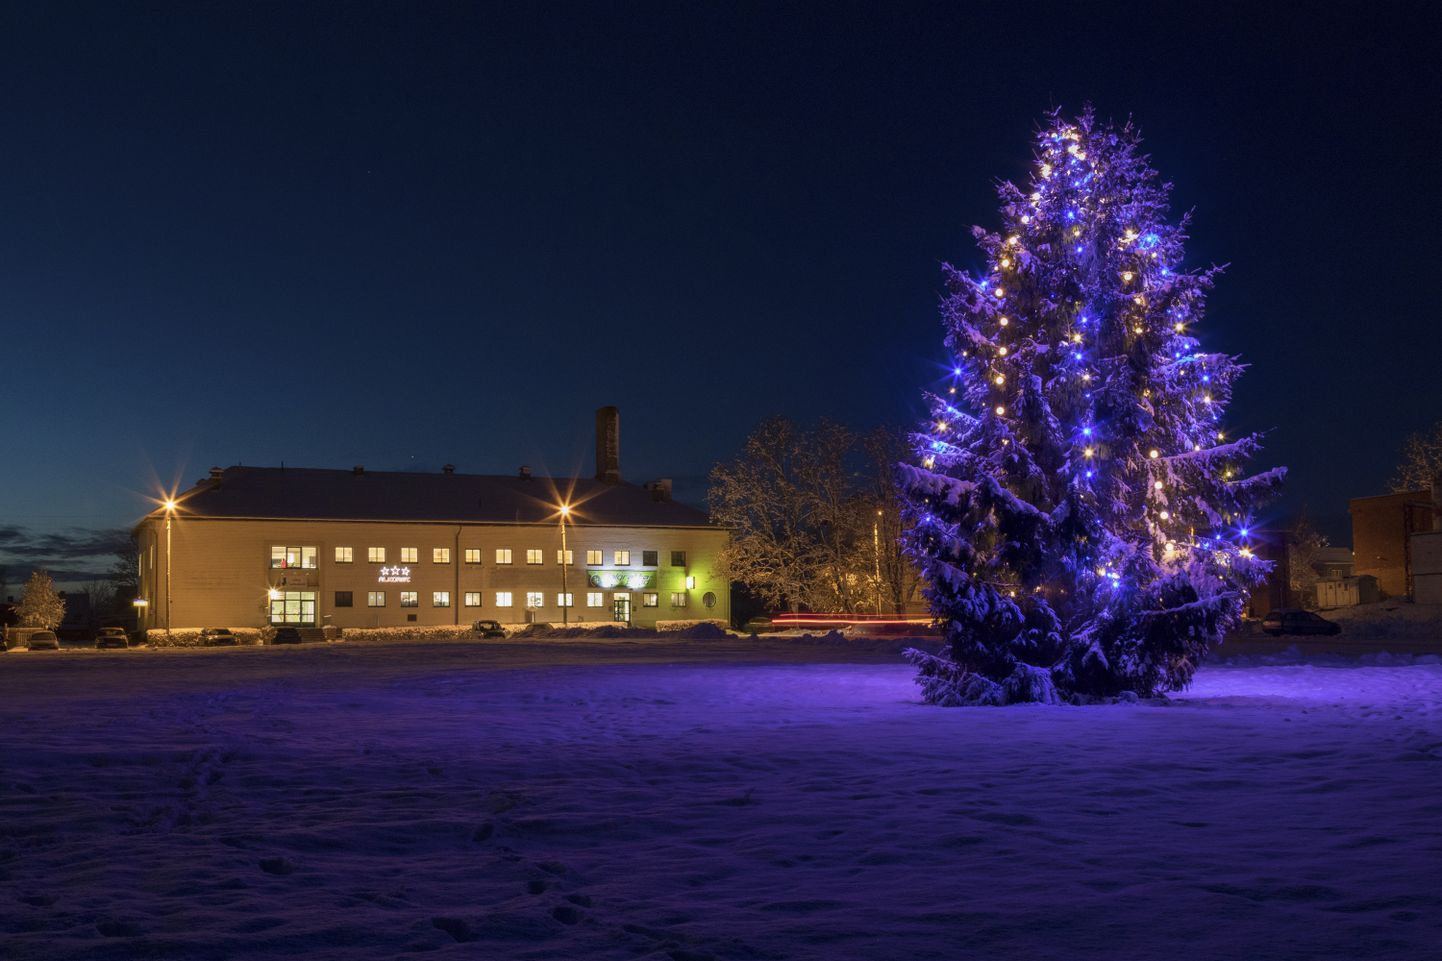 Detsembrikuu alguses valitses ilus lumine jõulumeeleolu. Pilt on tehtud Viljandis 6. detsembril.